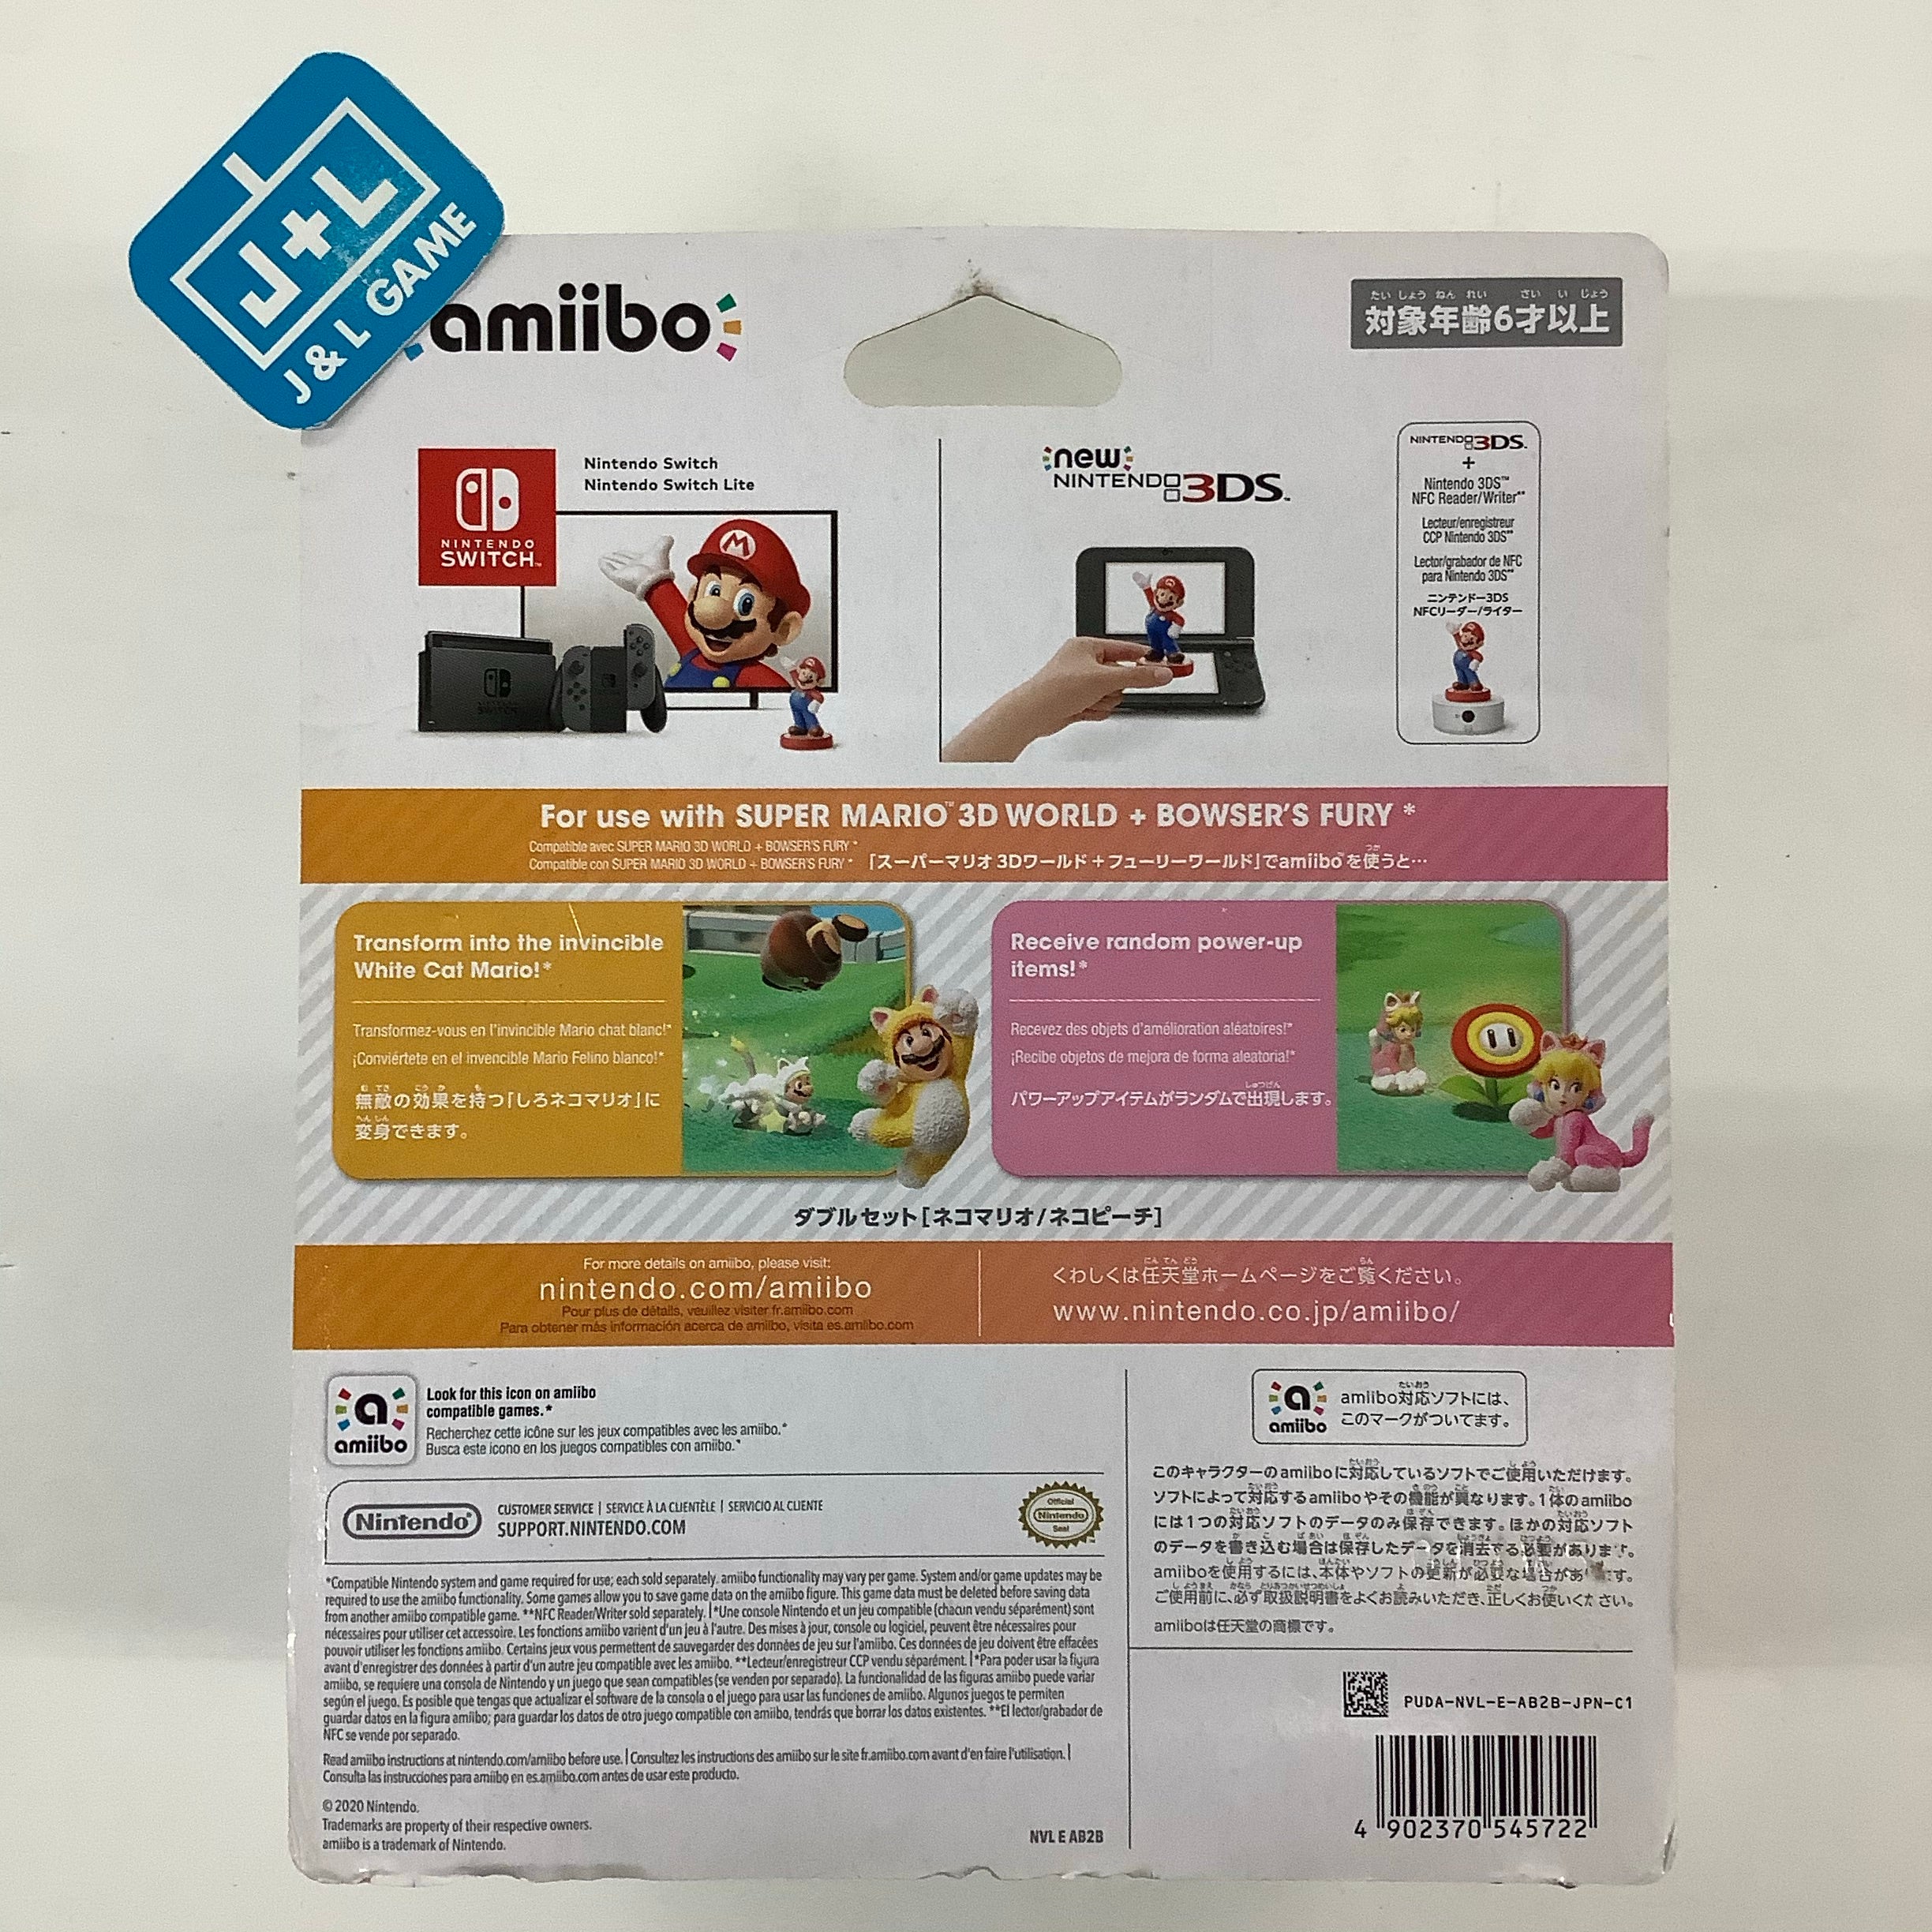 Cat Mario / Cat Peach 2-Pack (Super Mario Series) - Nintendo Switch Amiibo (Japanese Import) Amiibo Nintendo   